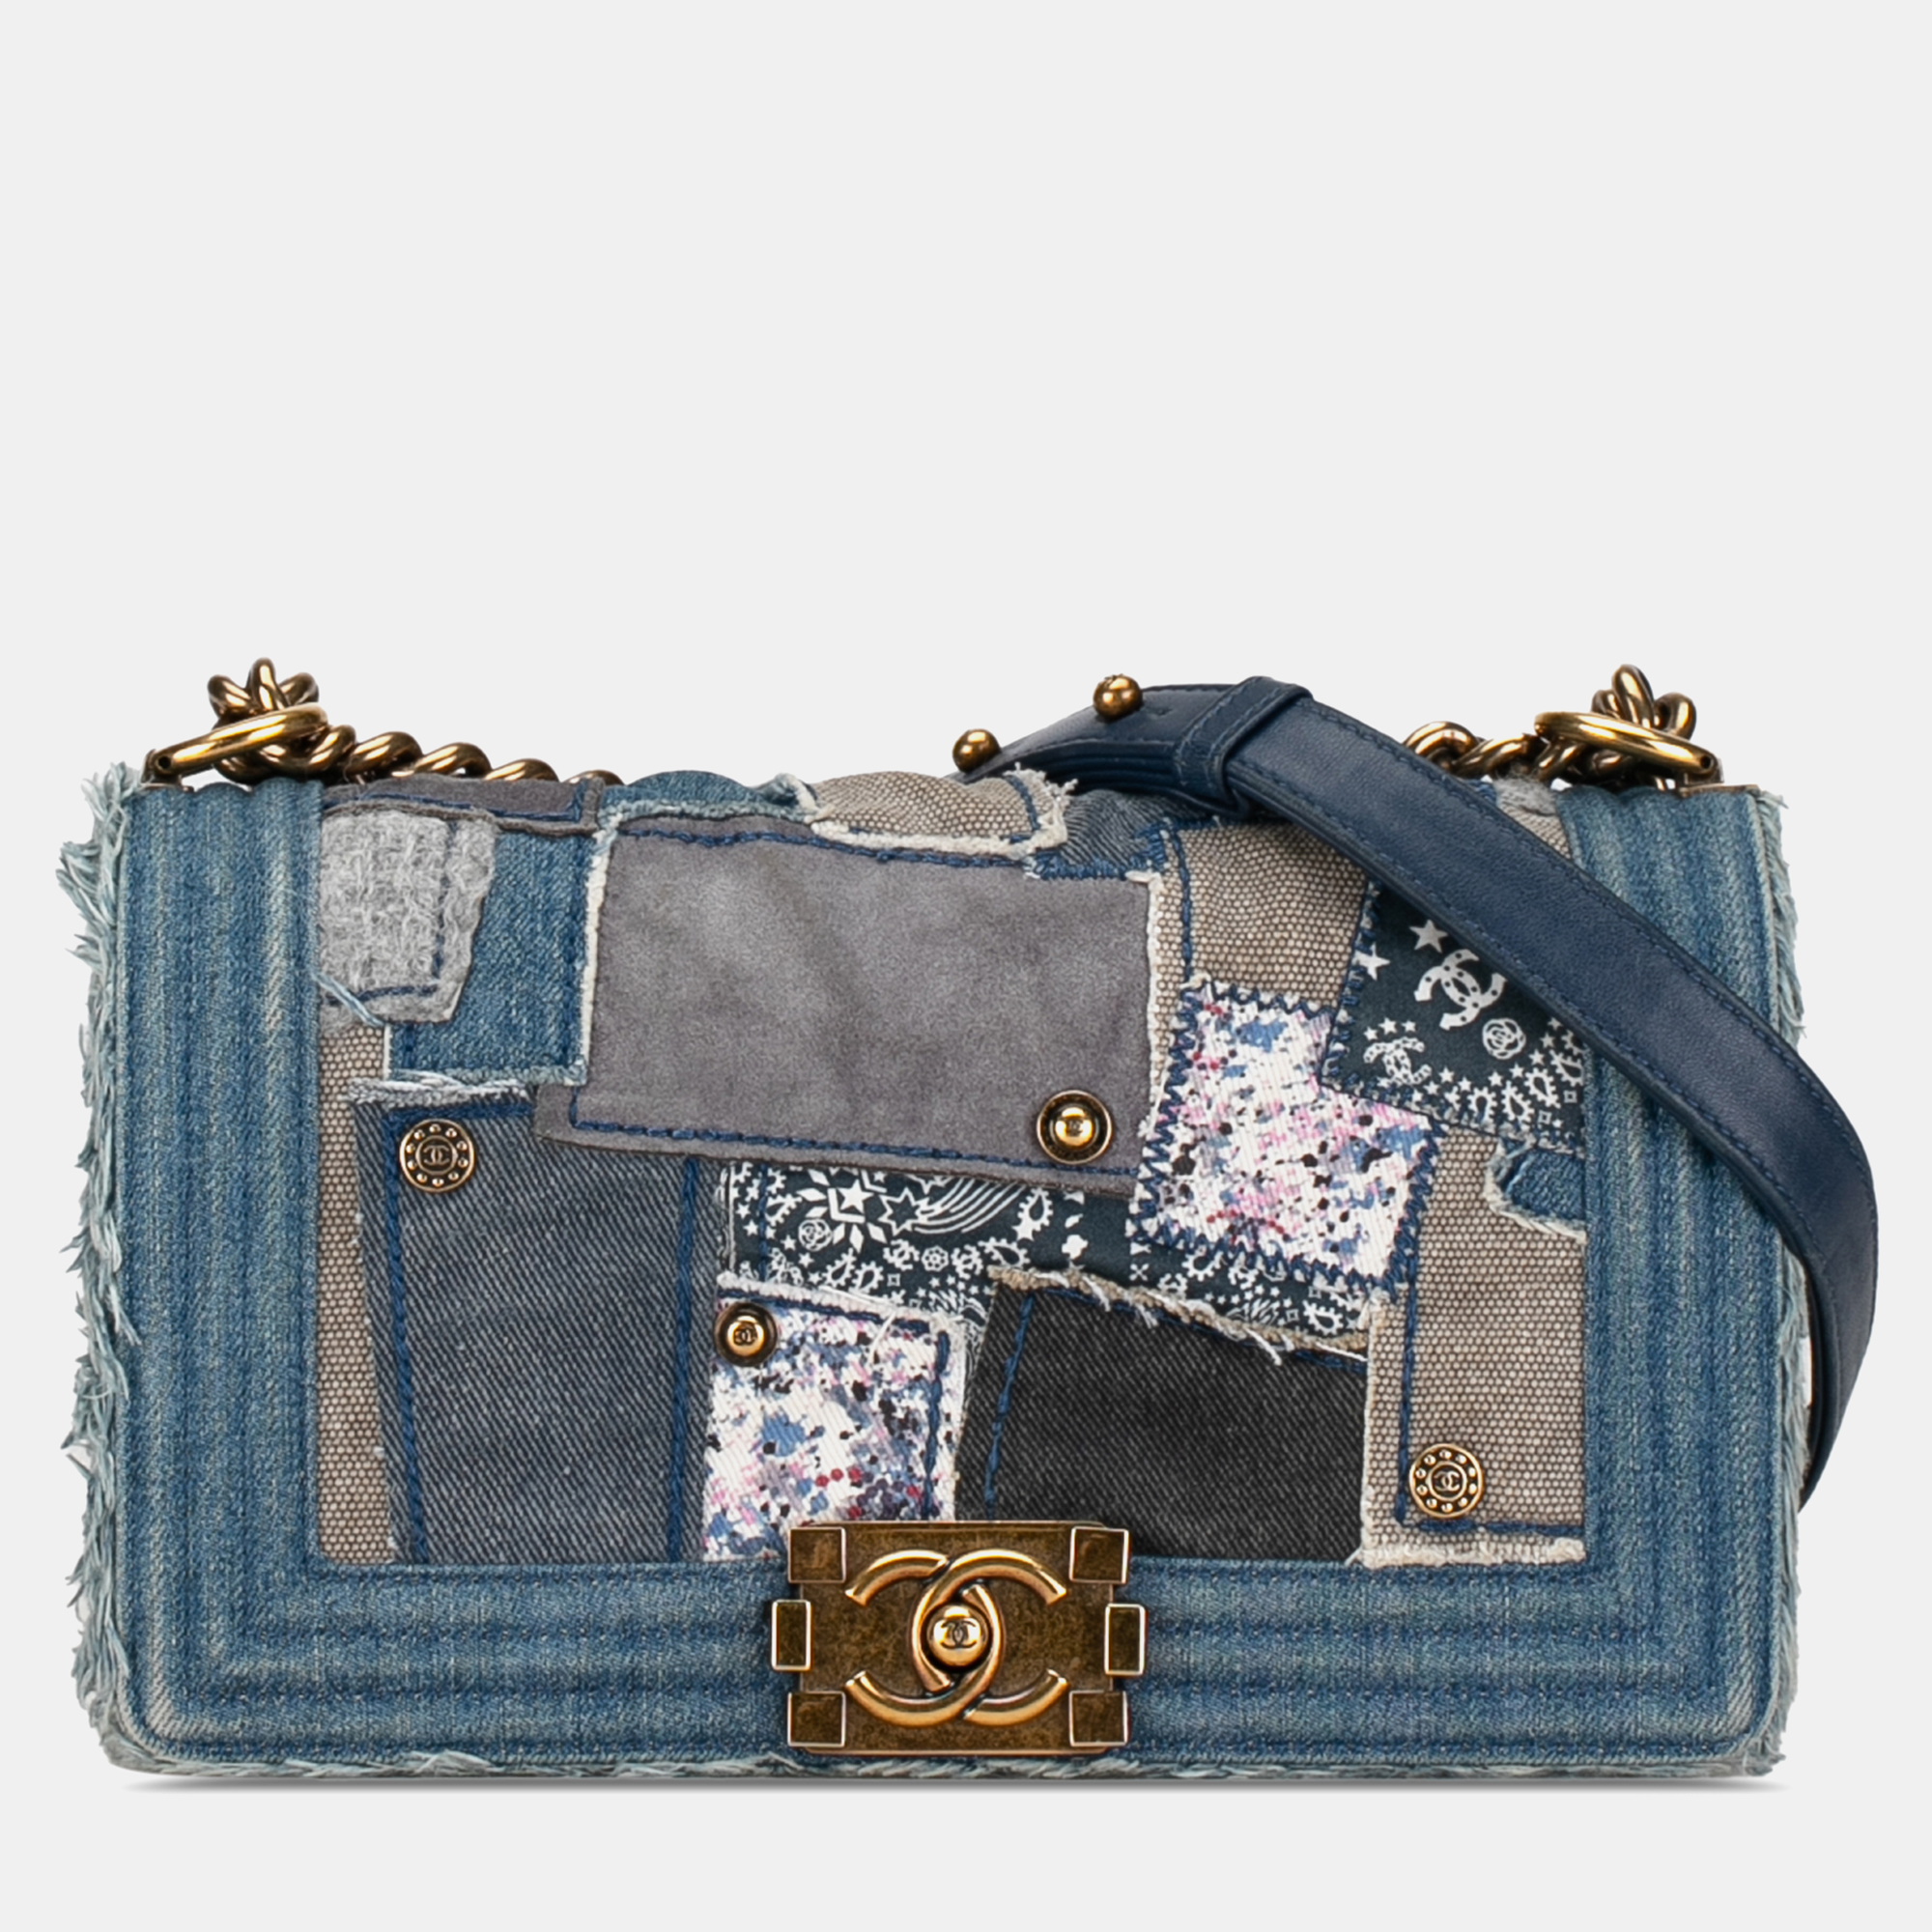 Chanel medium denim patchwork boy bag